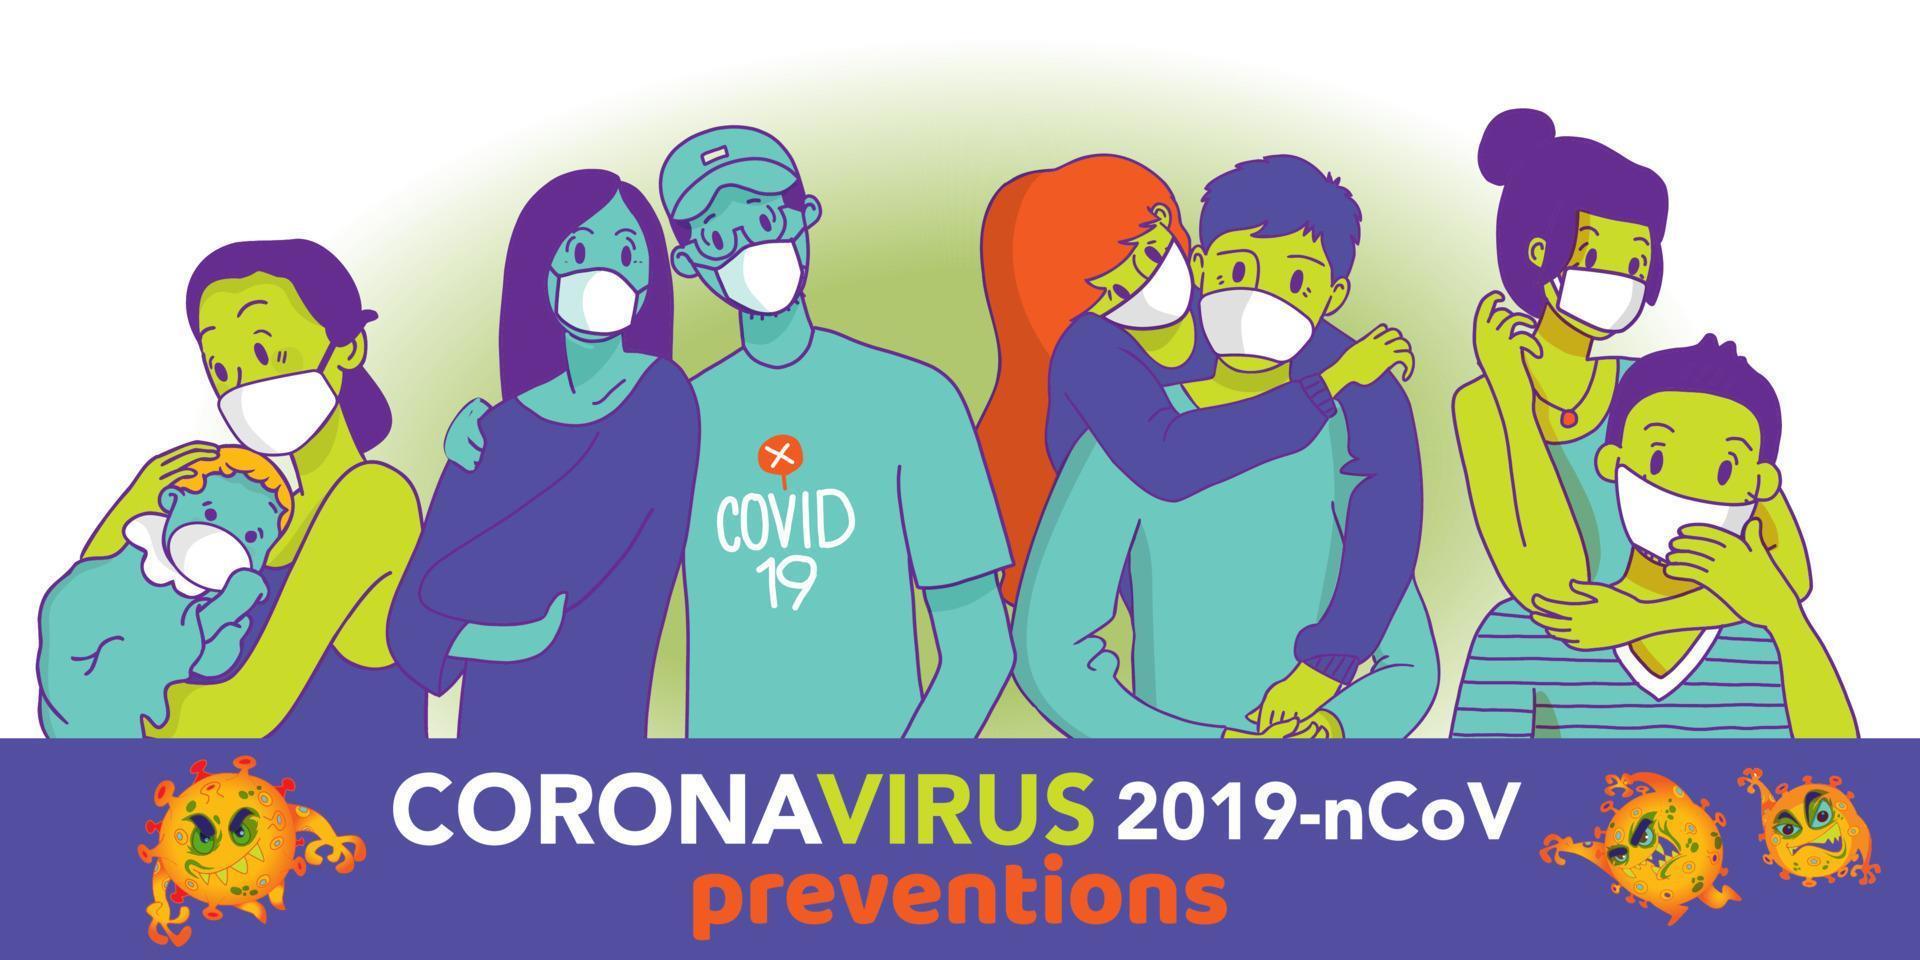 coronavirus in china. nieuw coronavirus 2019-ncov, mensen met een wit medisch gezichtsmasker. concept van coronavirus quarantaine vectorillustratie vector